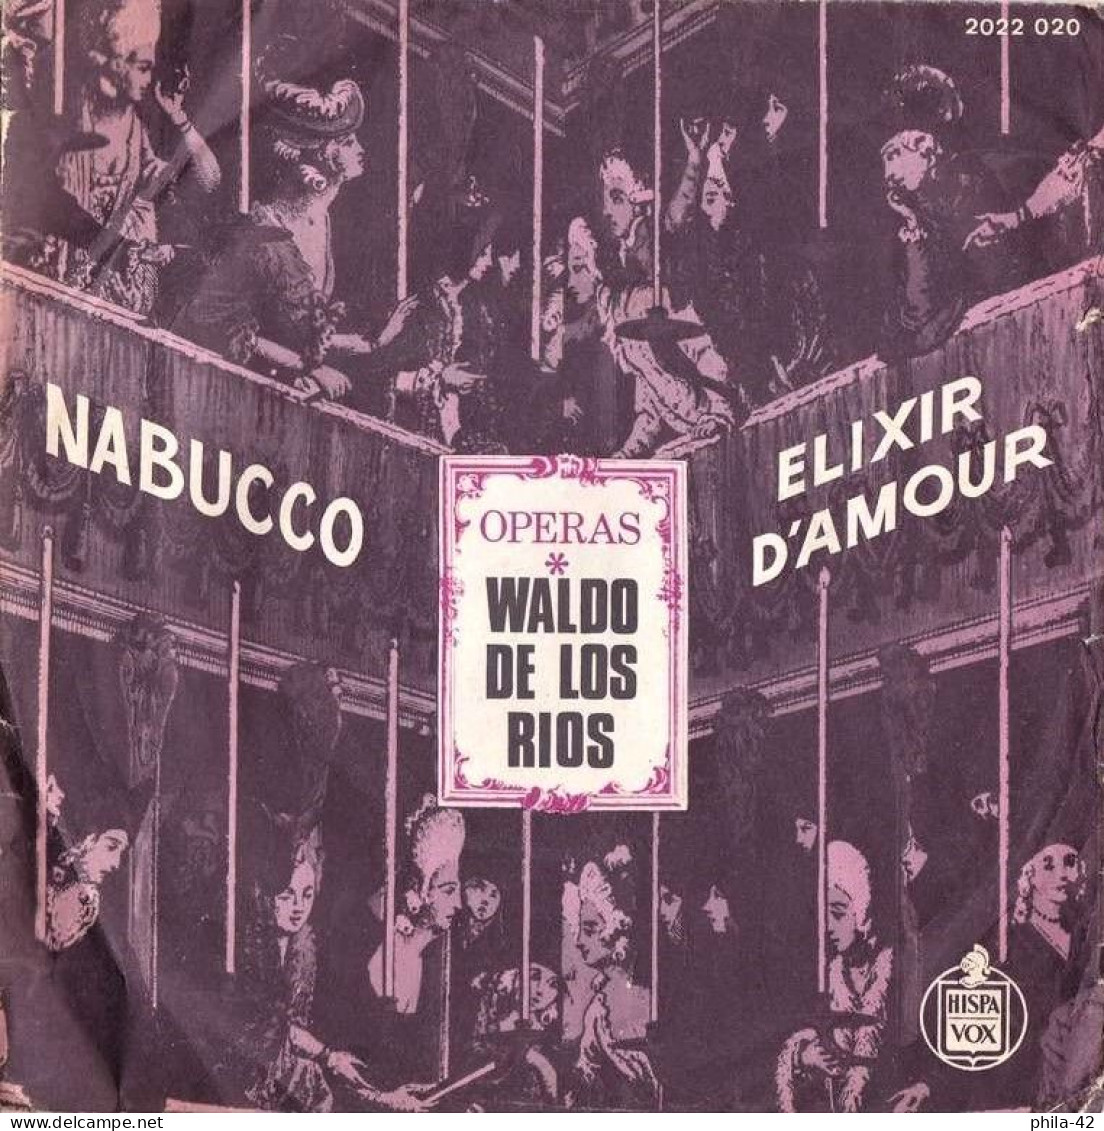 Waldo De Las Rios " Nabucco " Et " Elixir D'Amour "  Vinyle 45 Tours 1973 - HISPA VOX N° 2022 020 - Opéra & Opérette